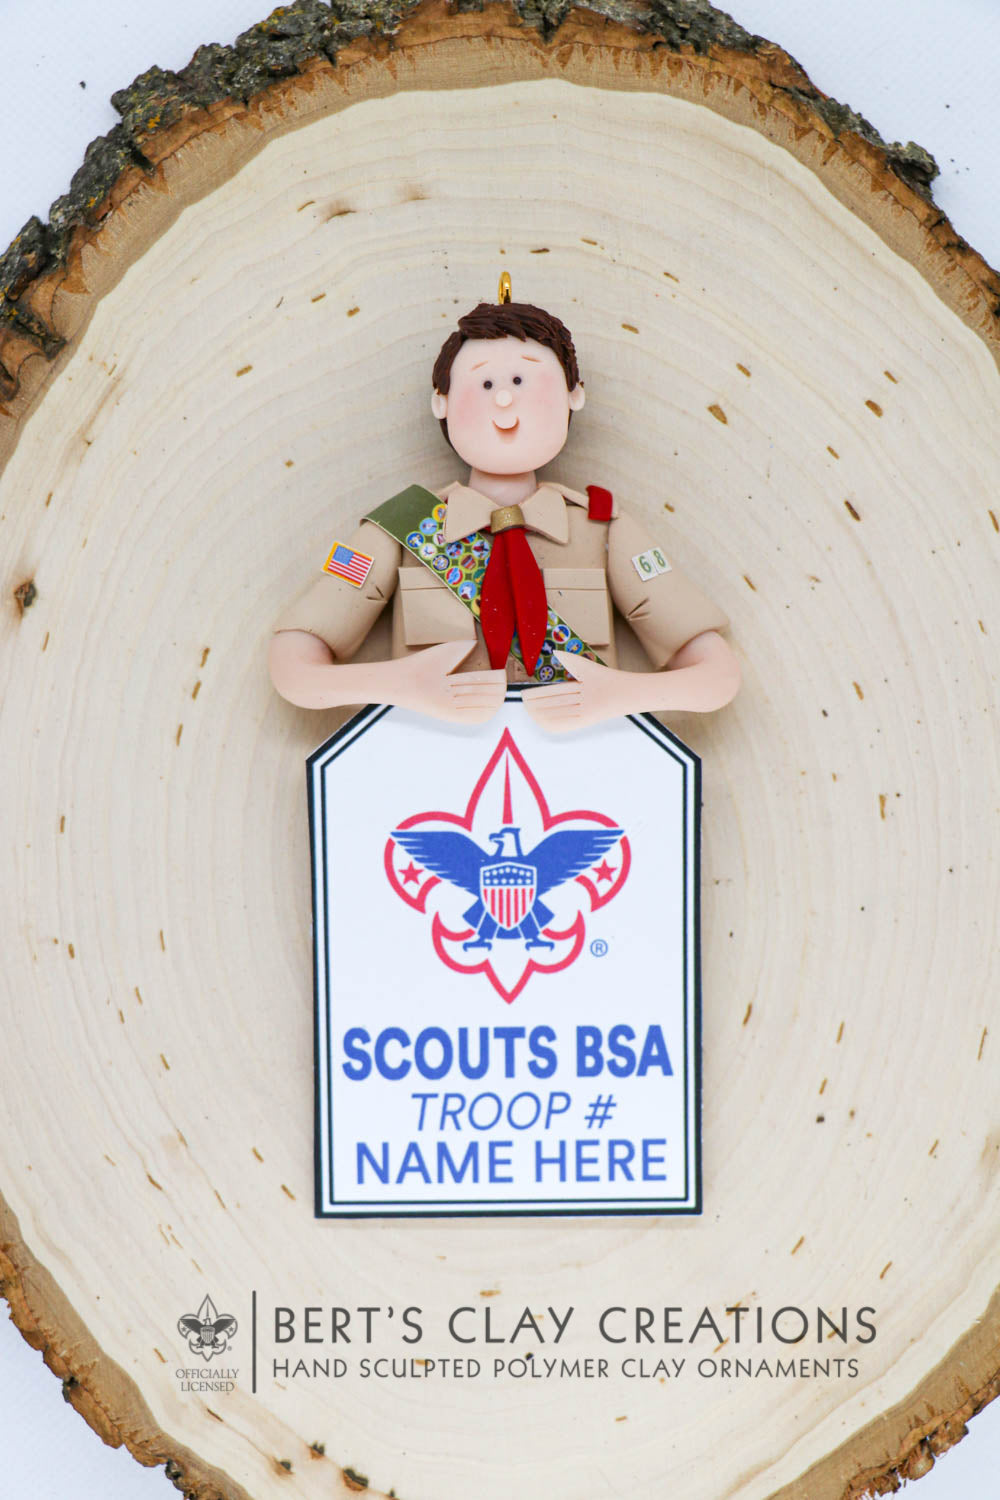 BSA - Boy Scout Ornament (Bust Version) - Bert's Clay Creations